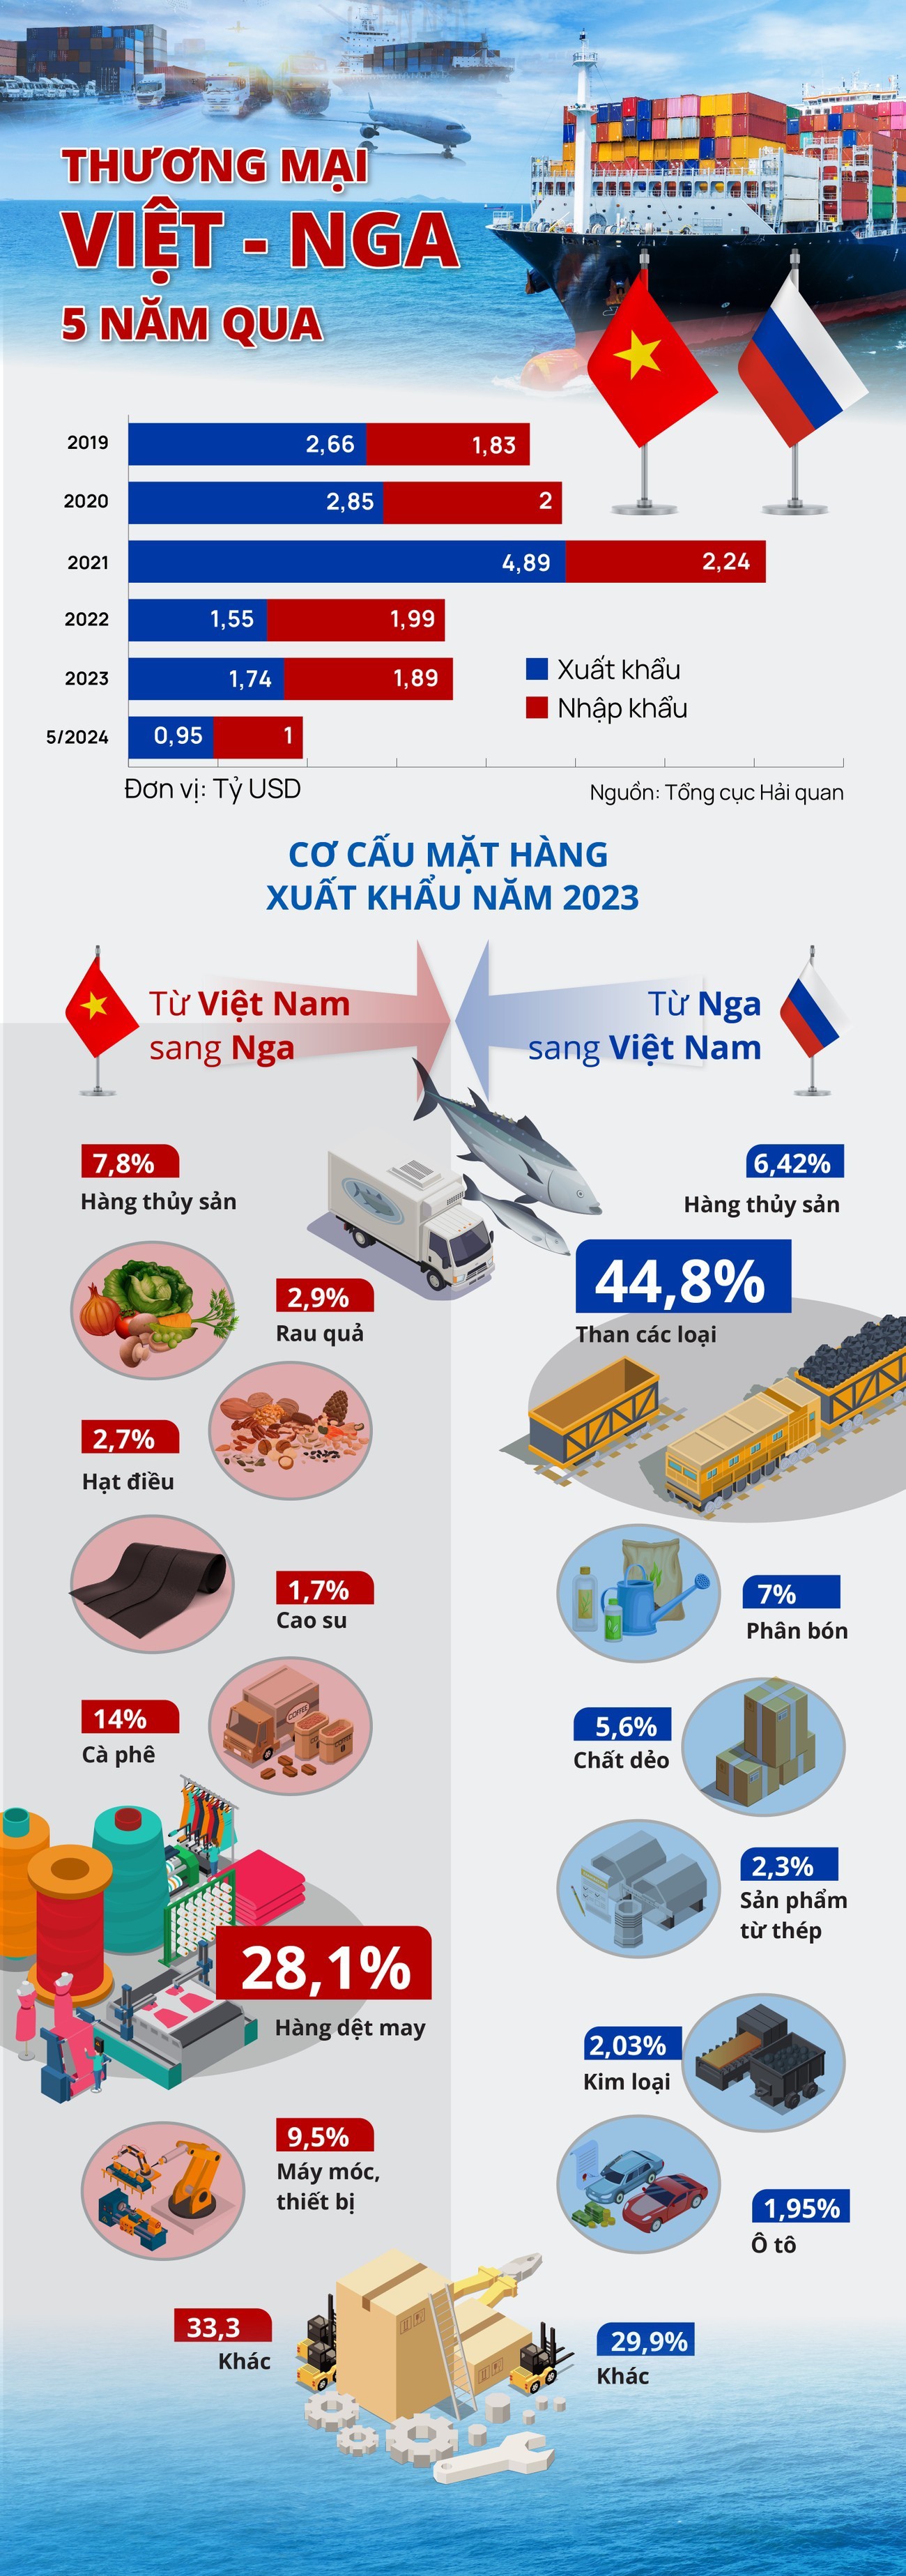 Thương mại Việt - Nga 5 năm qua - 1